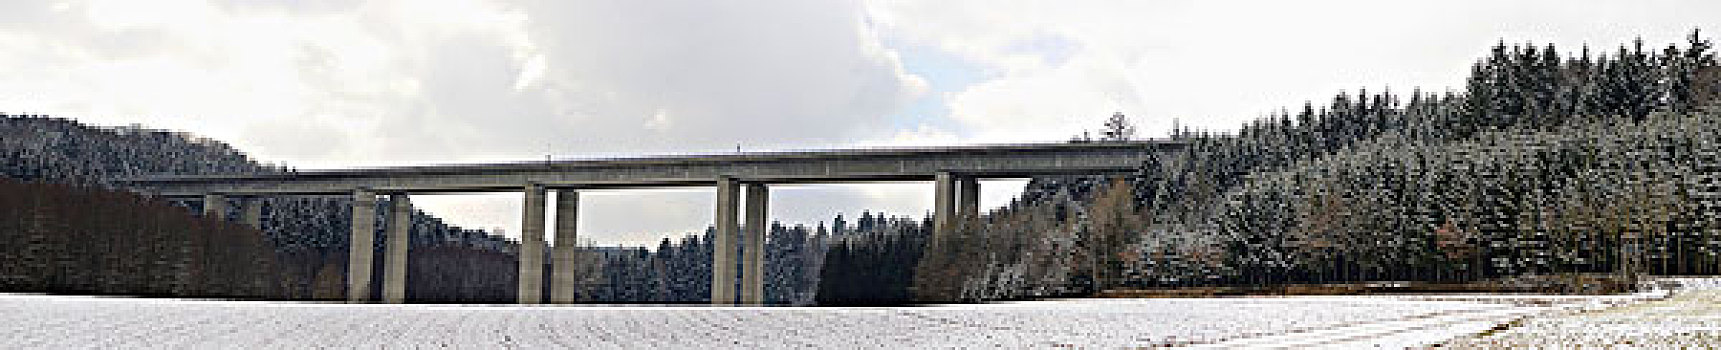 冬季风景,高速公路,桥,普拉蒂纳特,巴伐利亚,德国